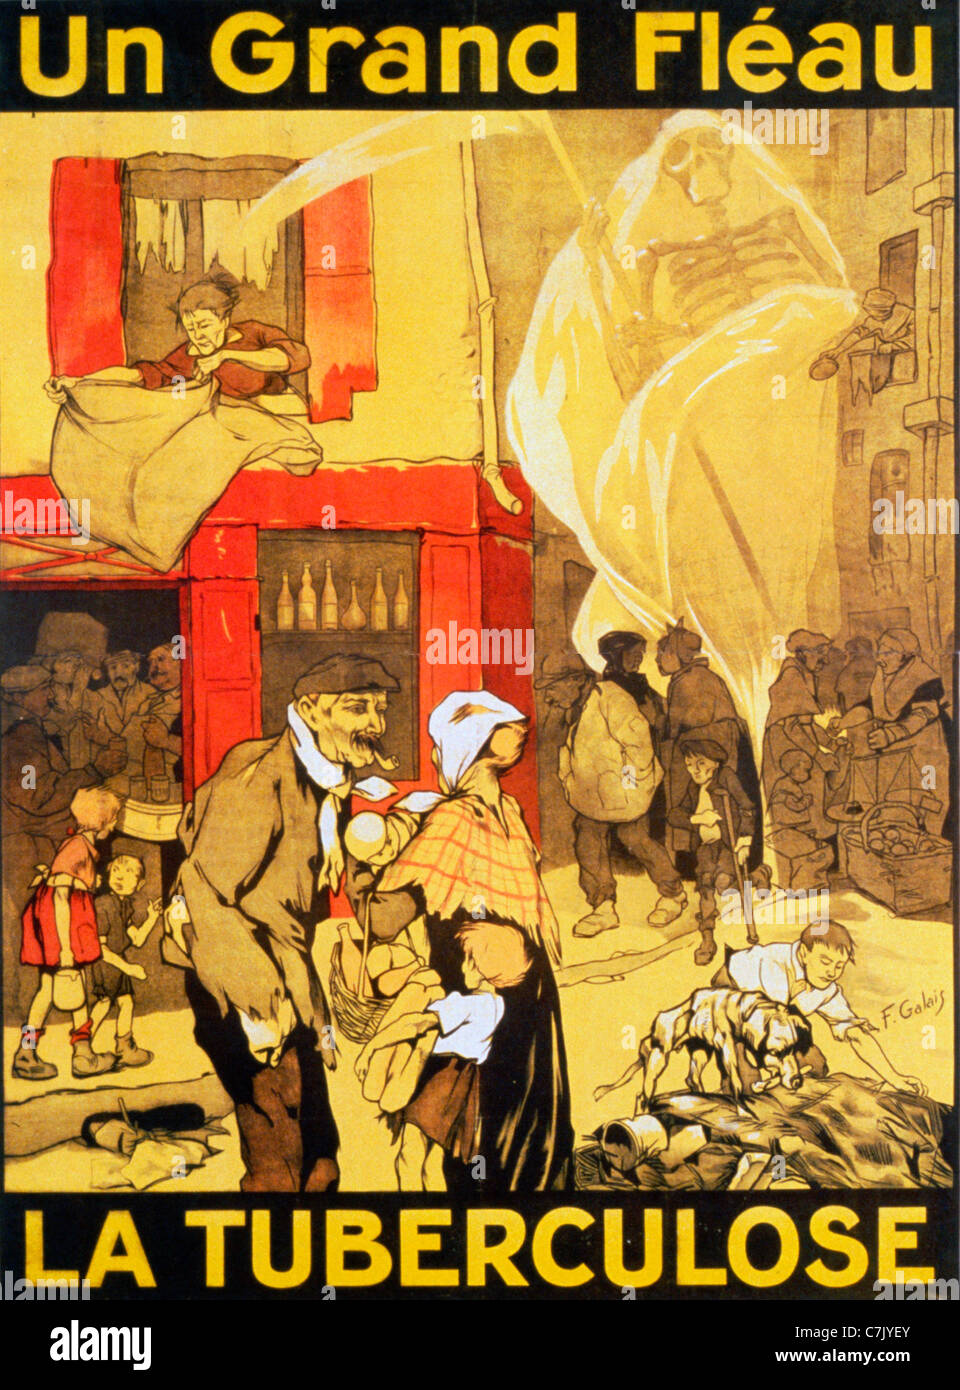 UN Grand Fleau La Tuberculose - die große Geißel der Tuberkulose - französische Poster, ca. 1917 Stockfoto